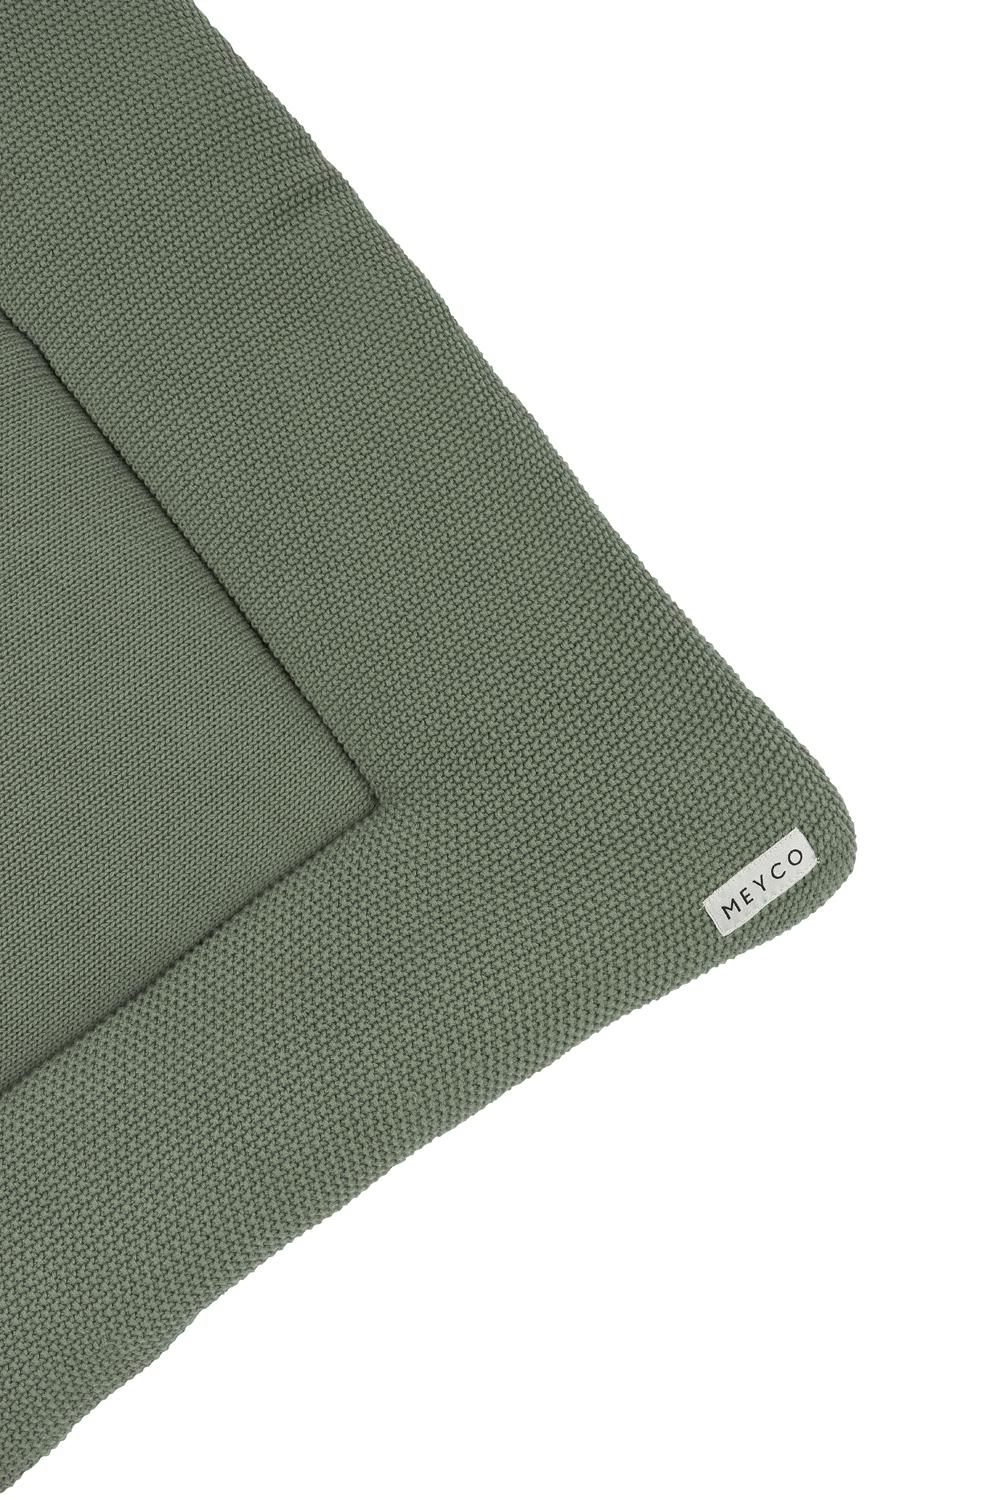 Playpen mattress biological Mini Relief - forest green - 77x97cm